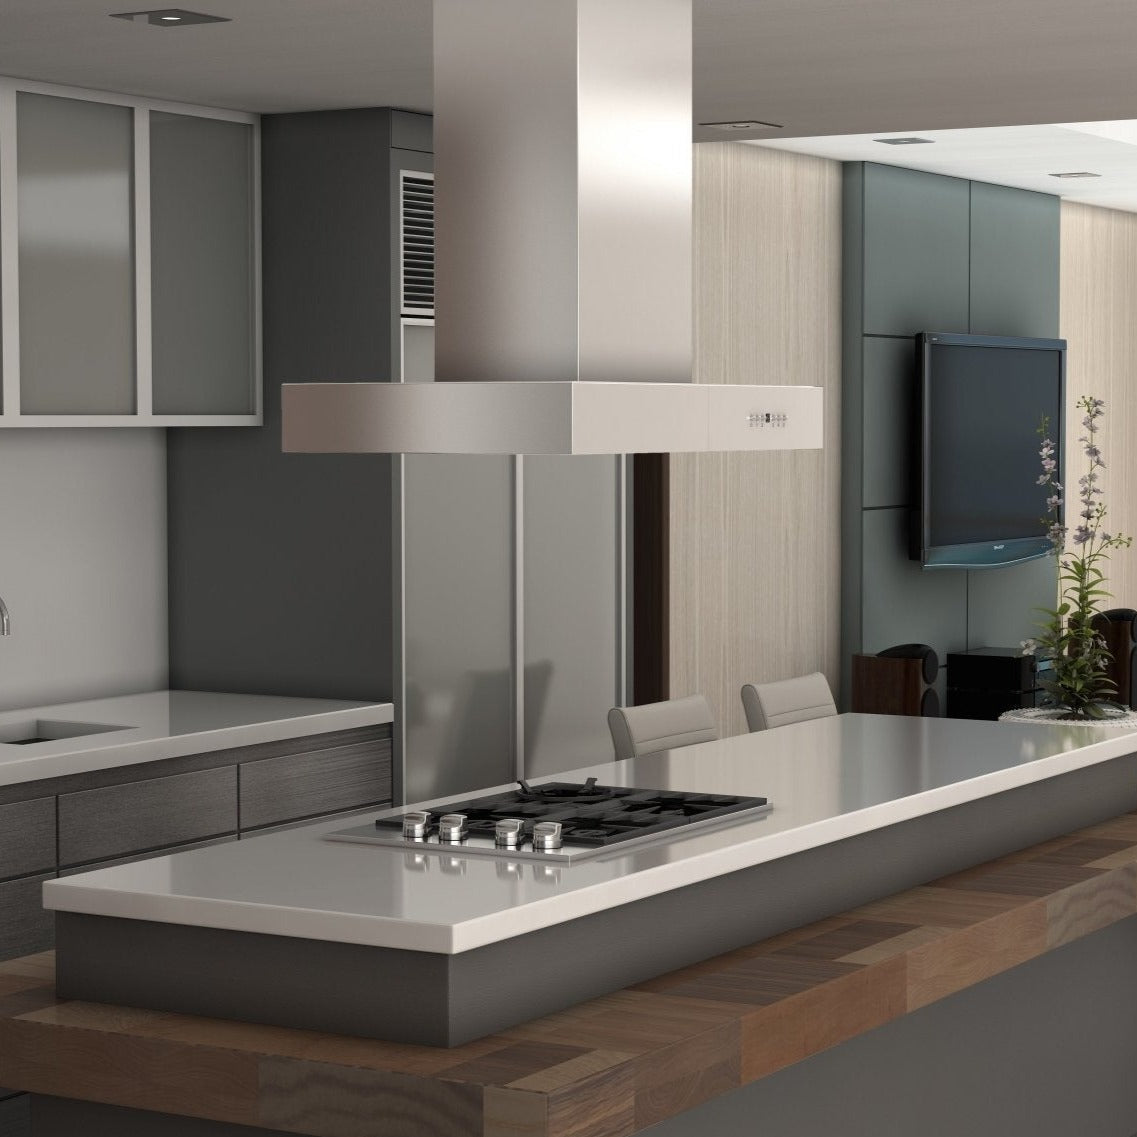 ZLINE Ducted Outdoor Island Mount Range Hood in Stainless Steel (KECOMi-304) rendering in a luxury kitchen.